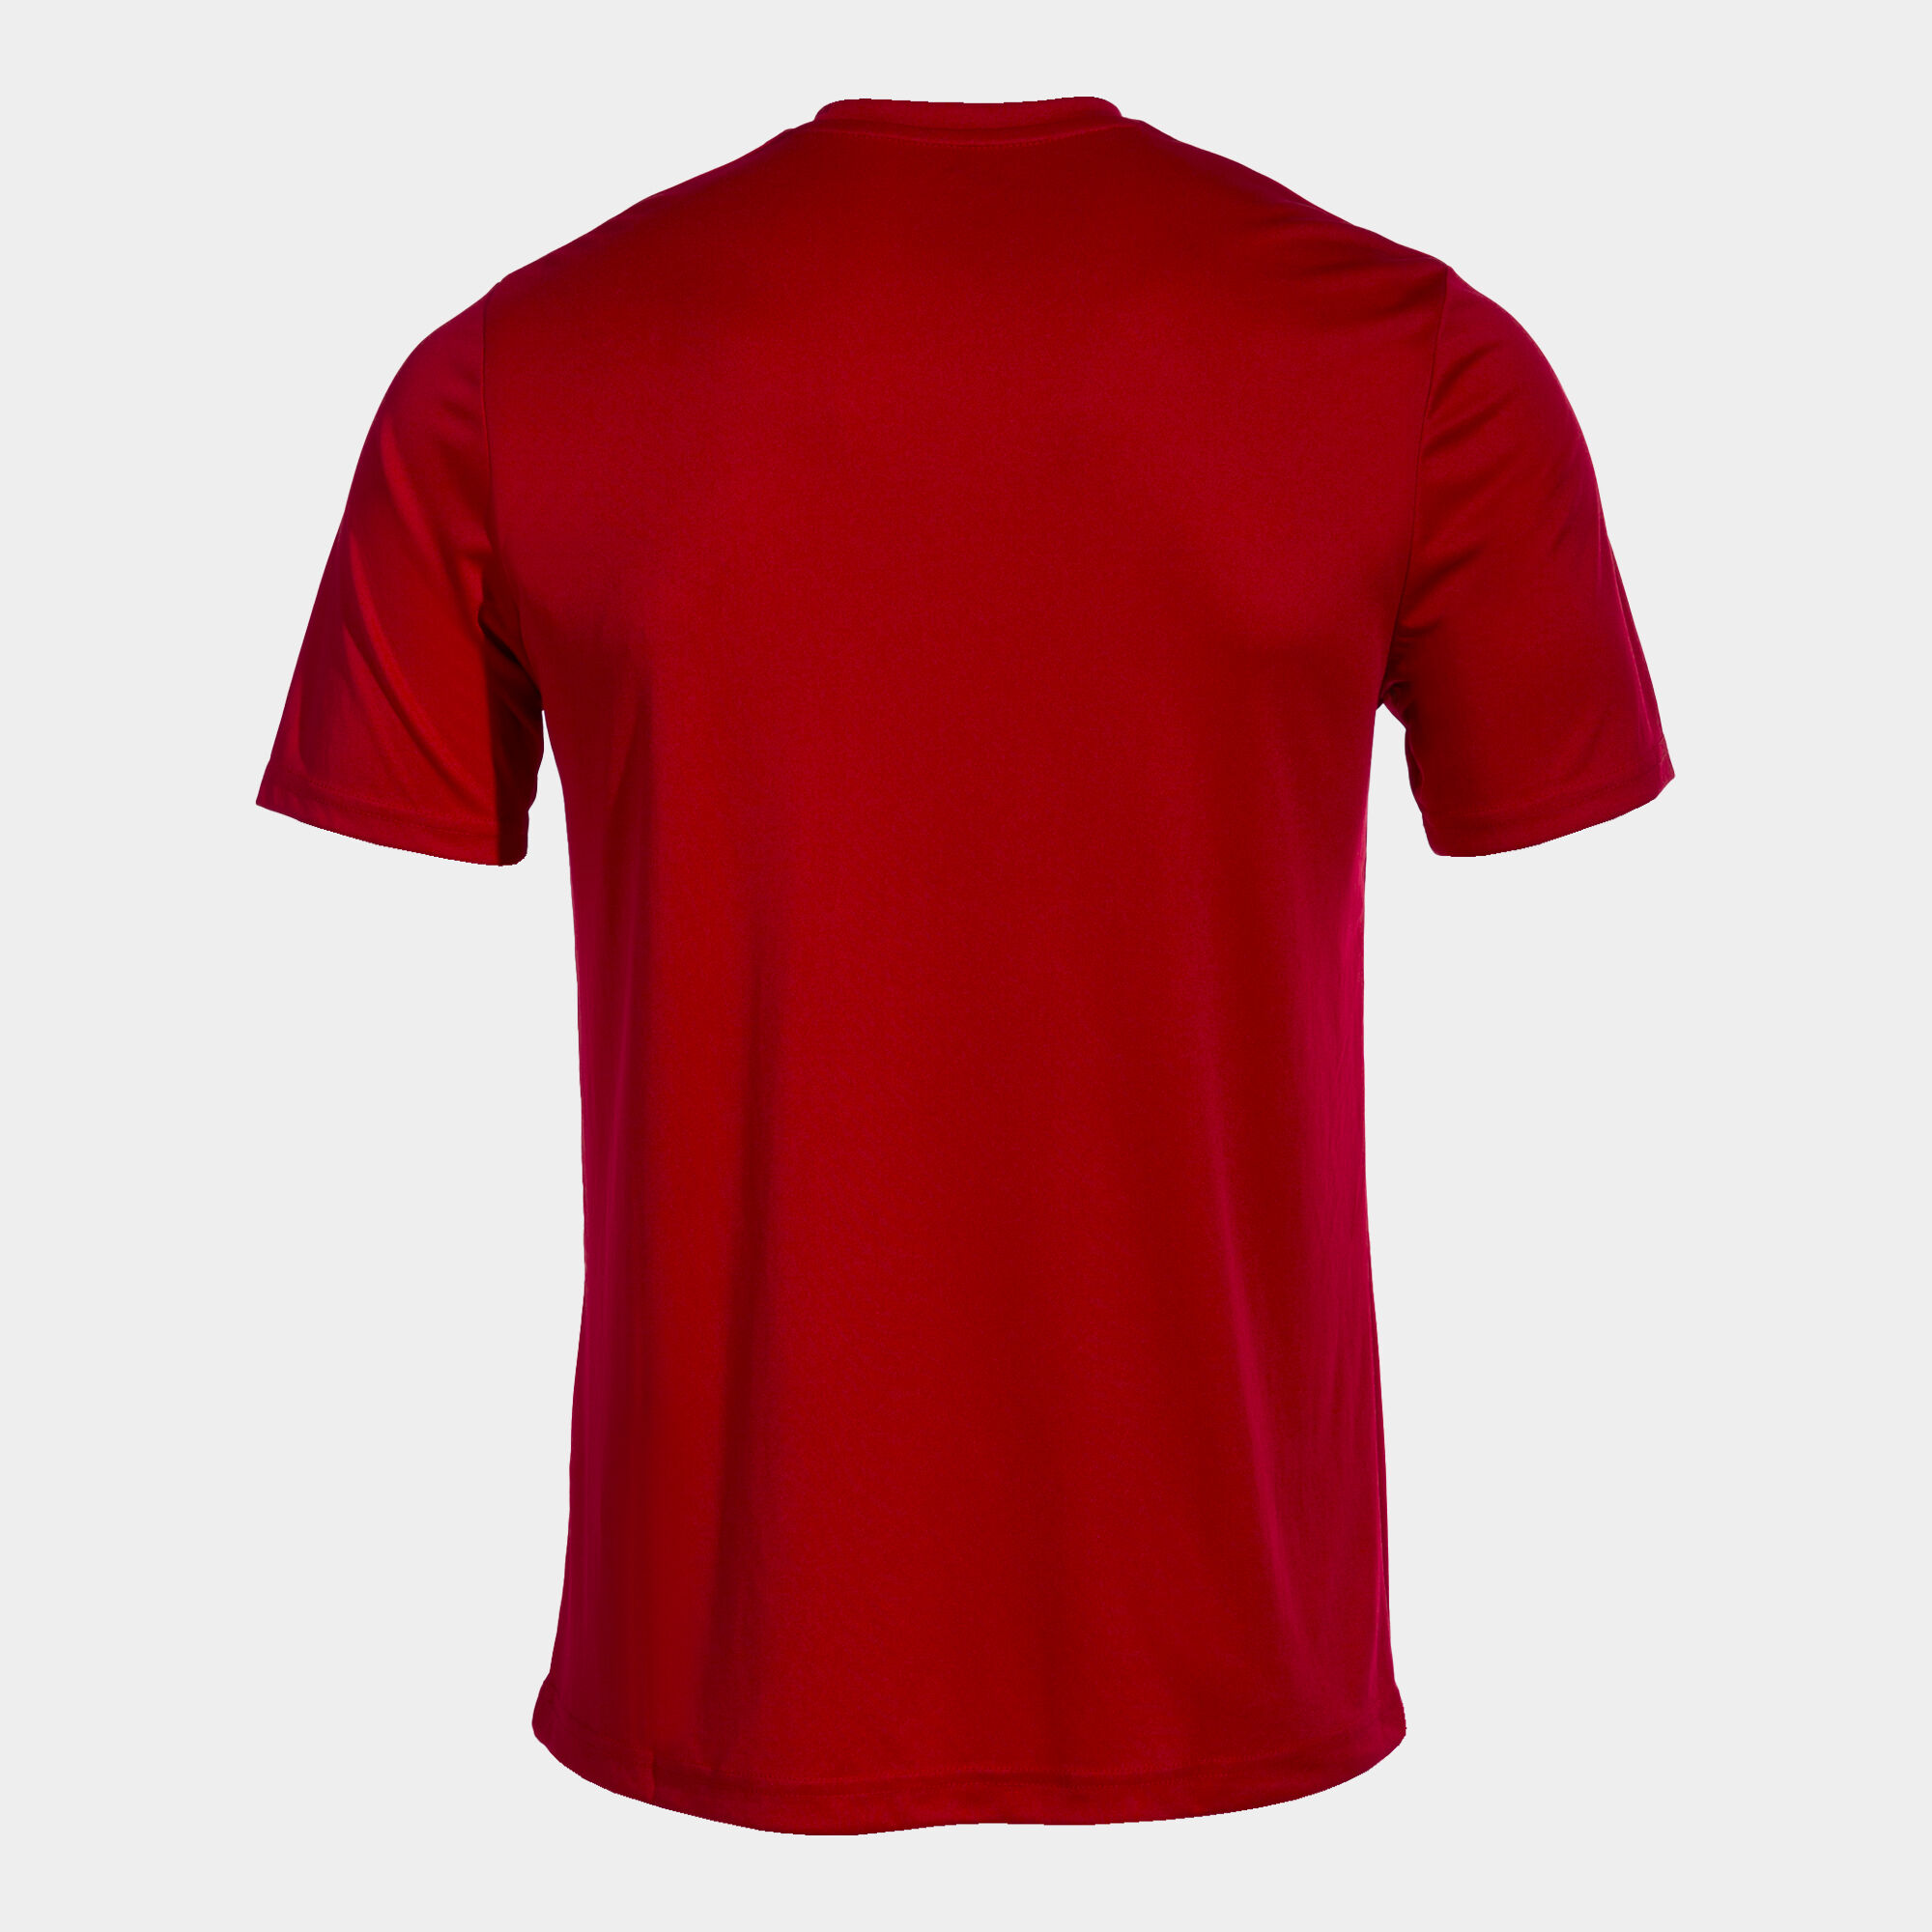  Camiseta Roja Hombre